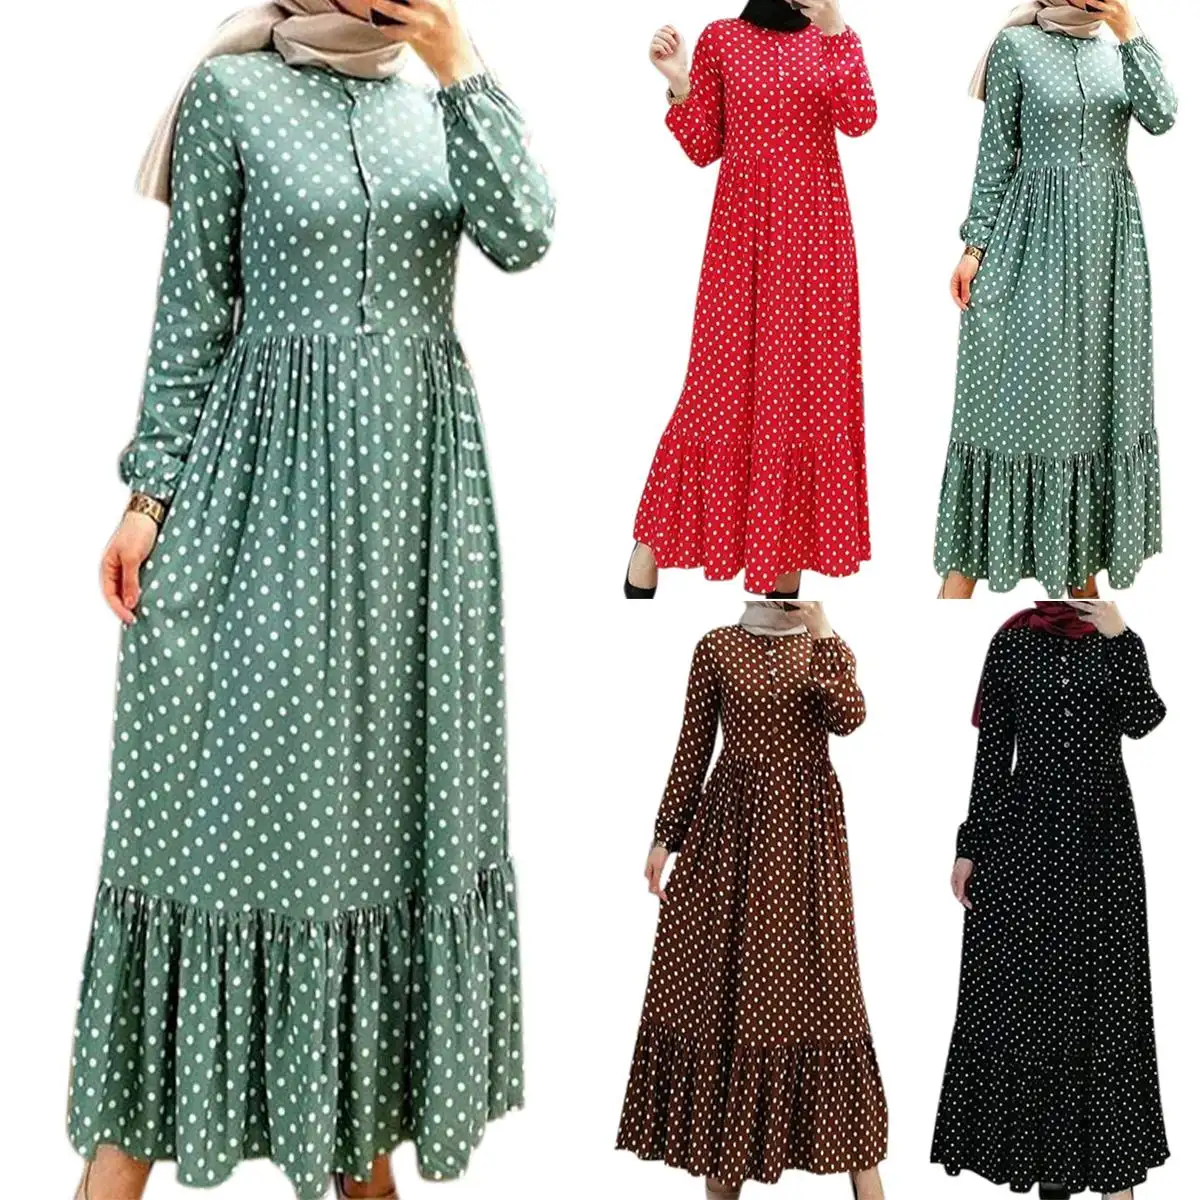 2021 새로운 도착 터키 이슬람 여성 의류 활기찬 폴카 도트 긴 소매 맥시 드레스 abaya 이슬람